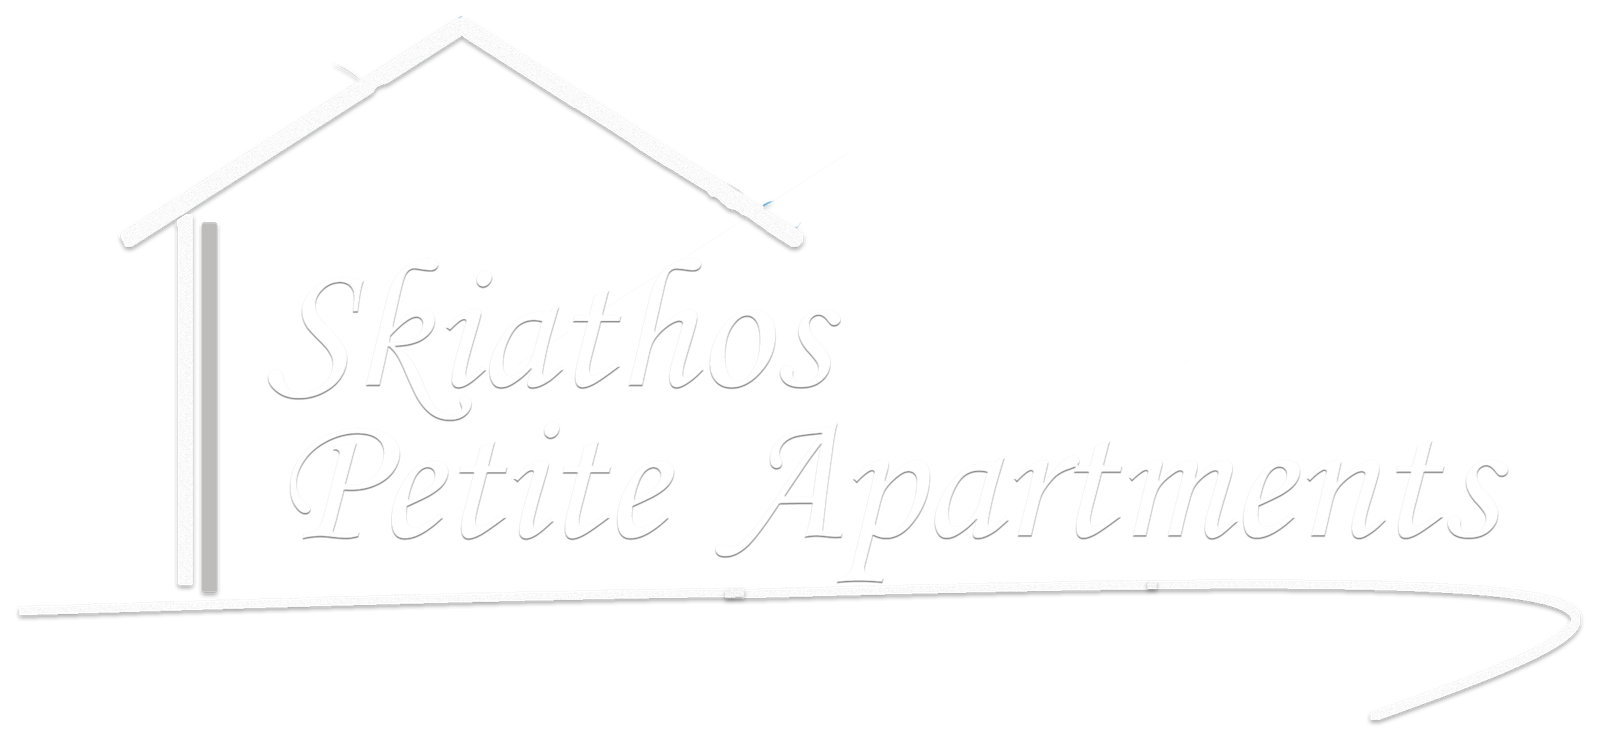 Skiathos Petite Apartments | License Policy - Skiathos Petite Apartments